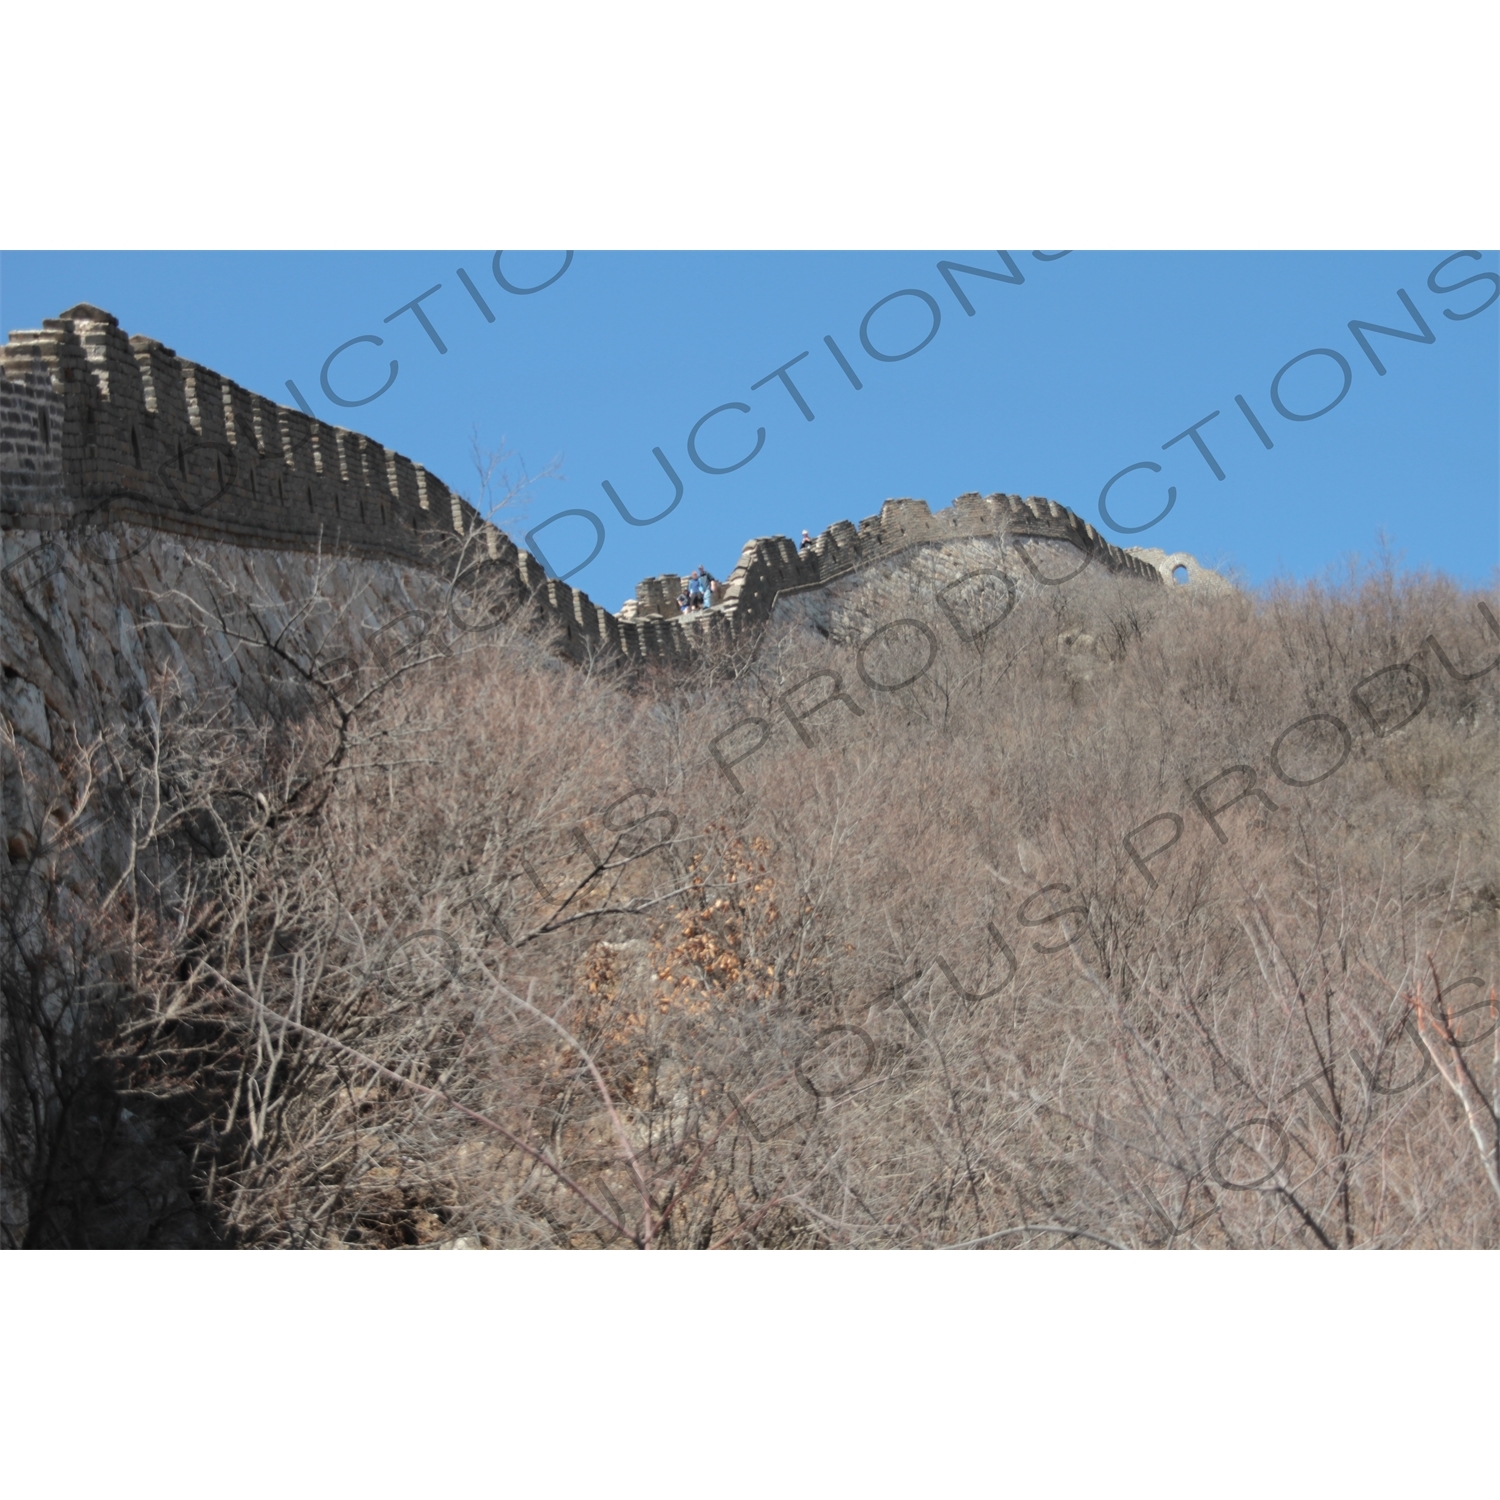 Mutianyu Section of the Great Wall of China (Wanli Changcheng) near Beijing